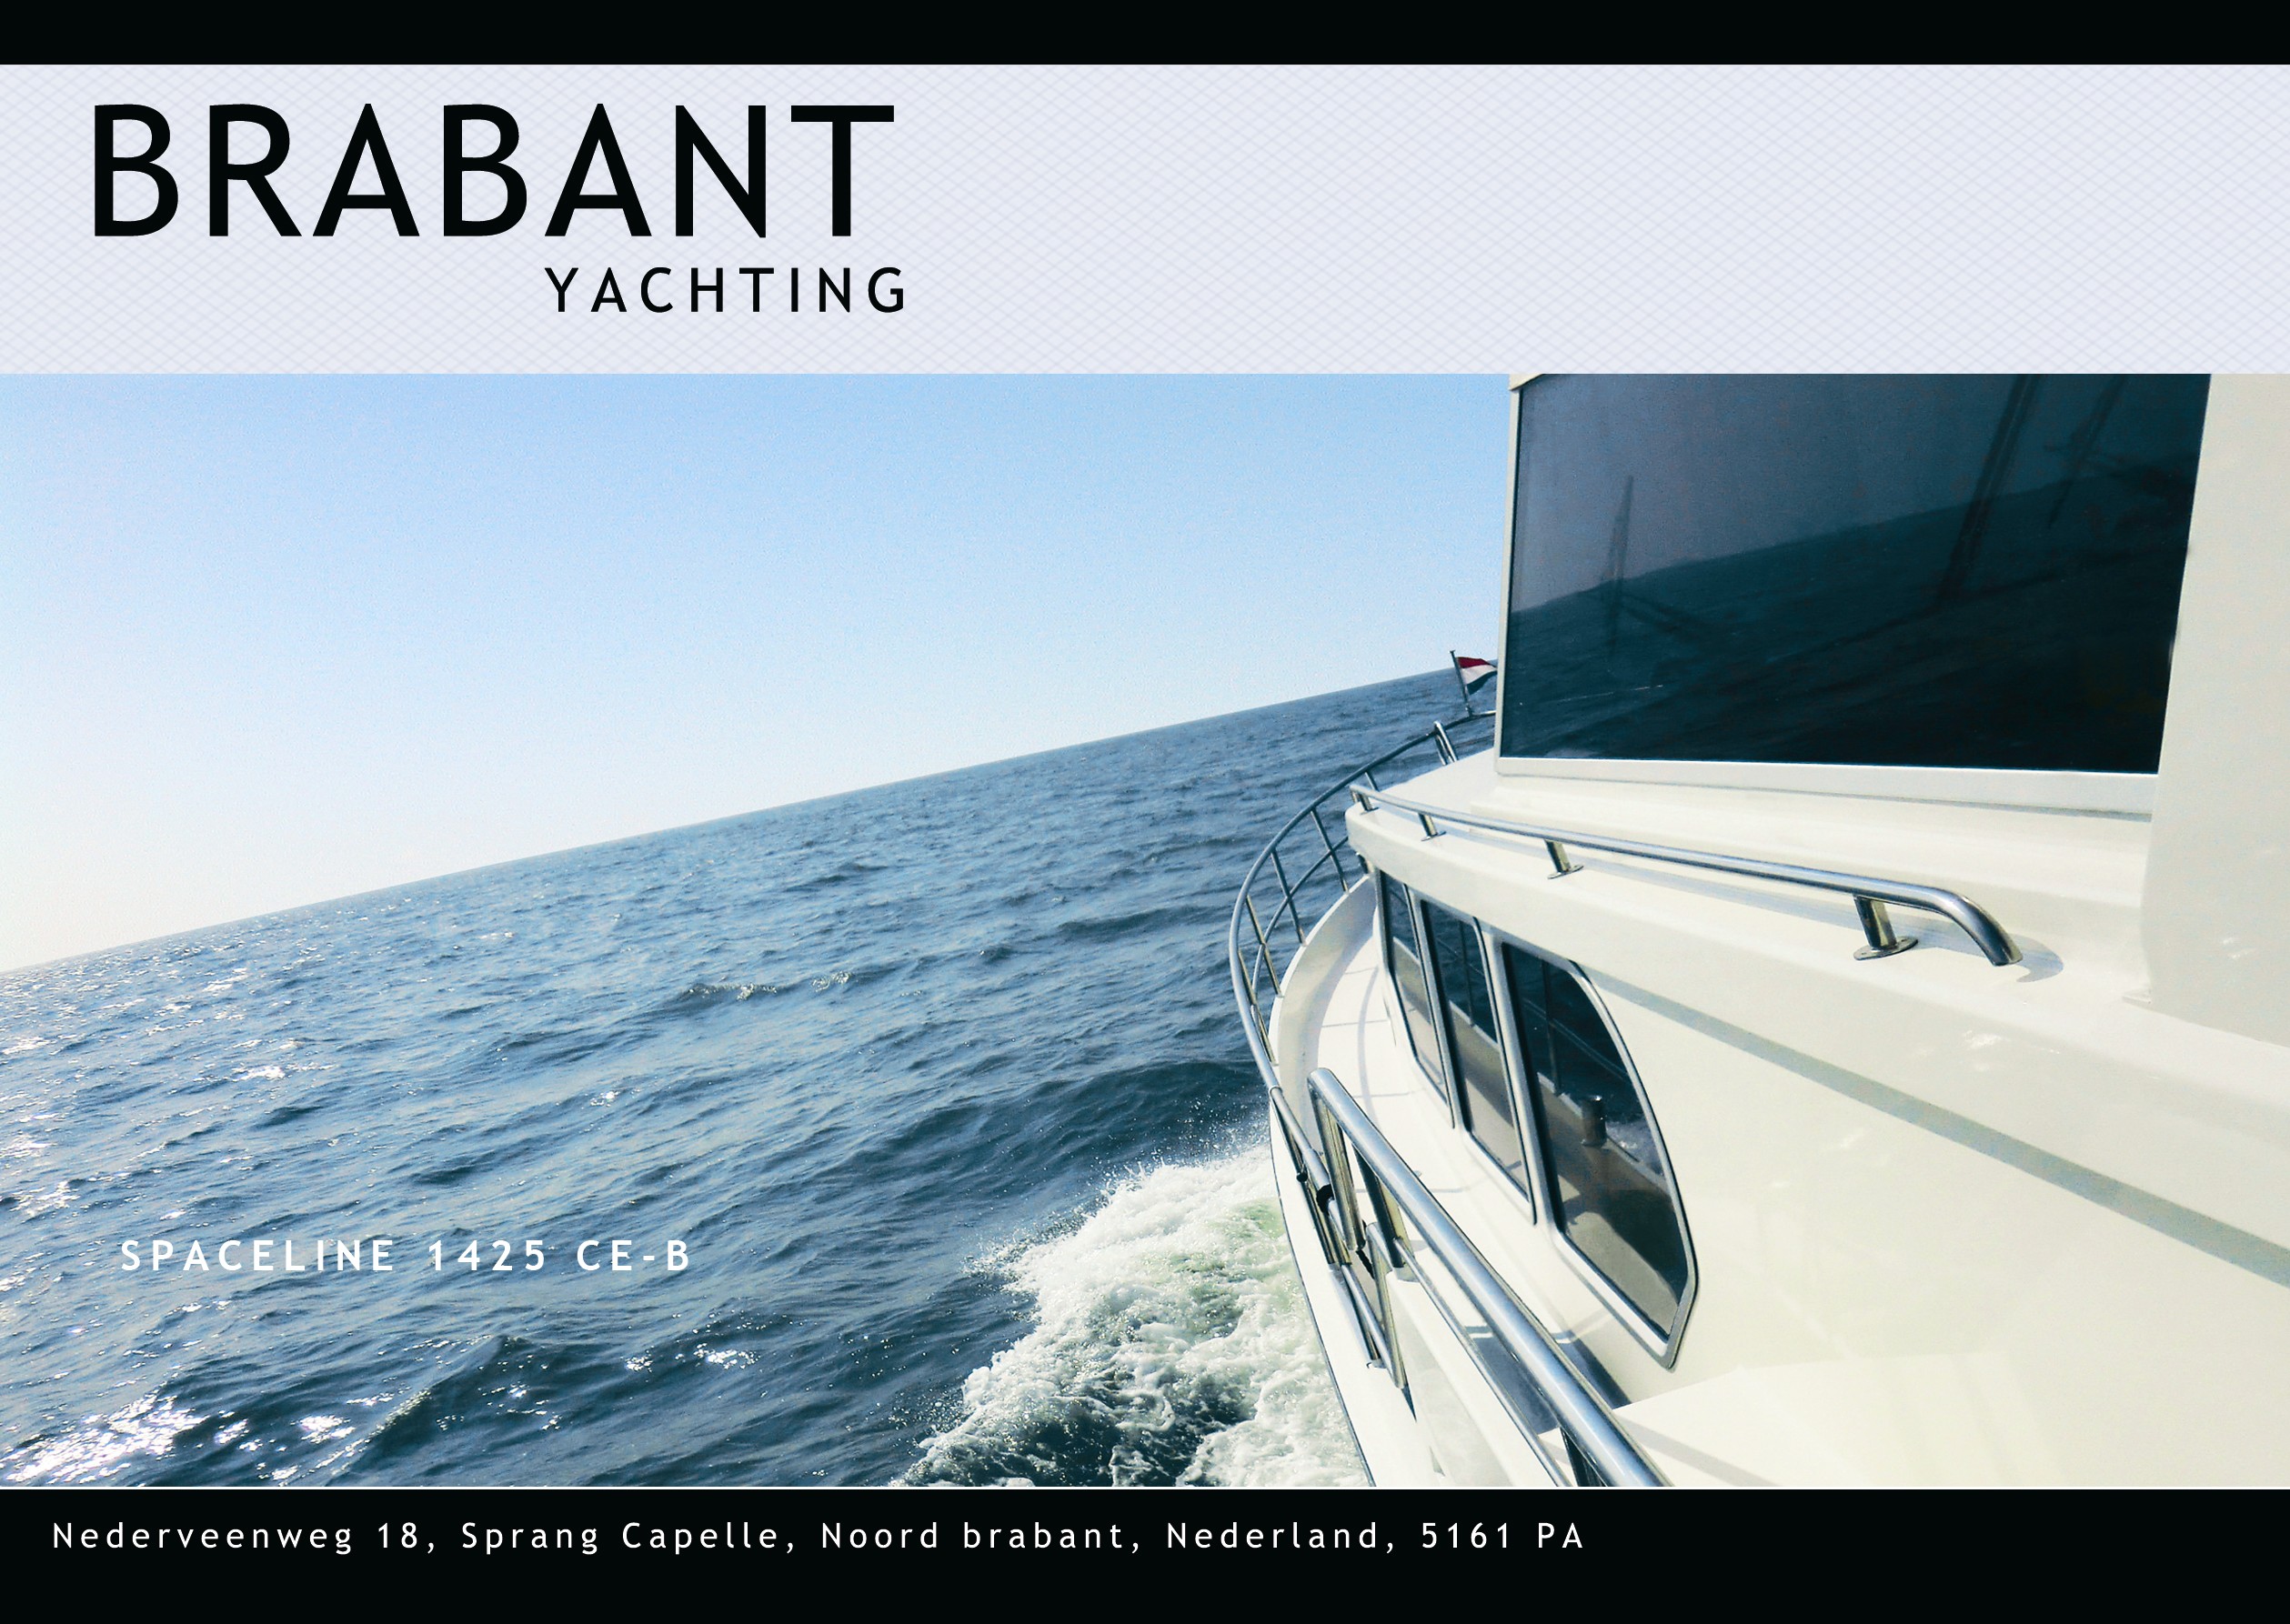 Brabant yachting